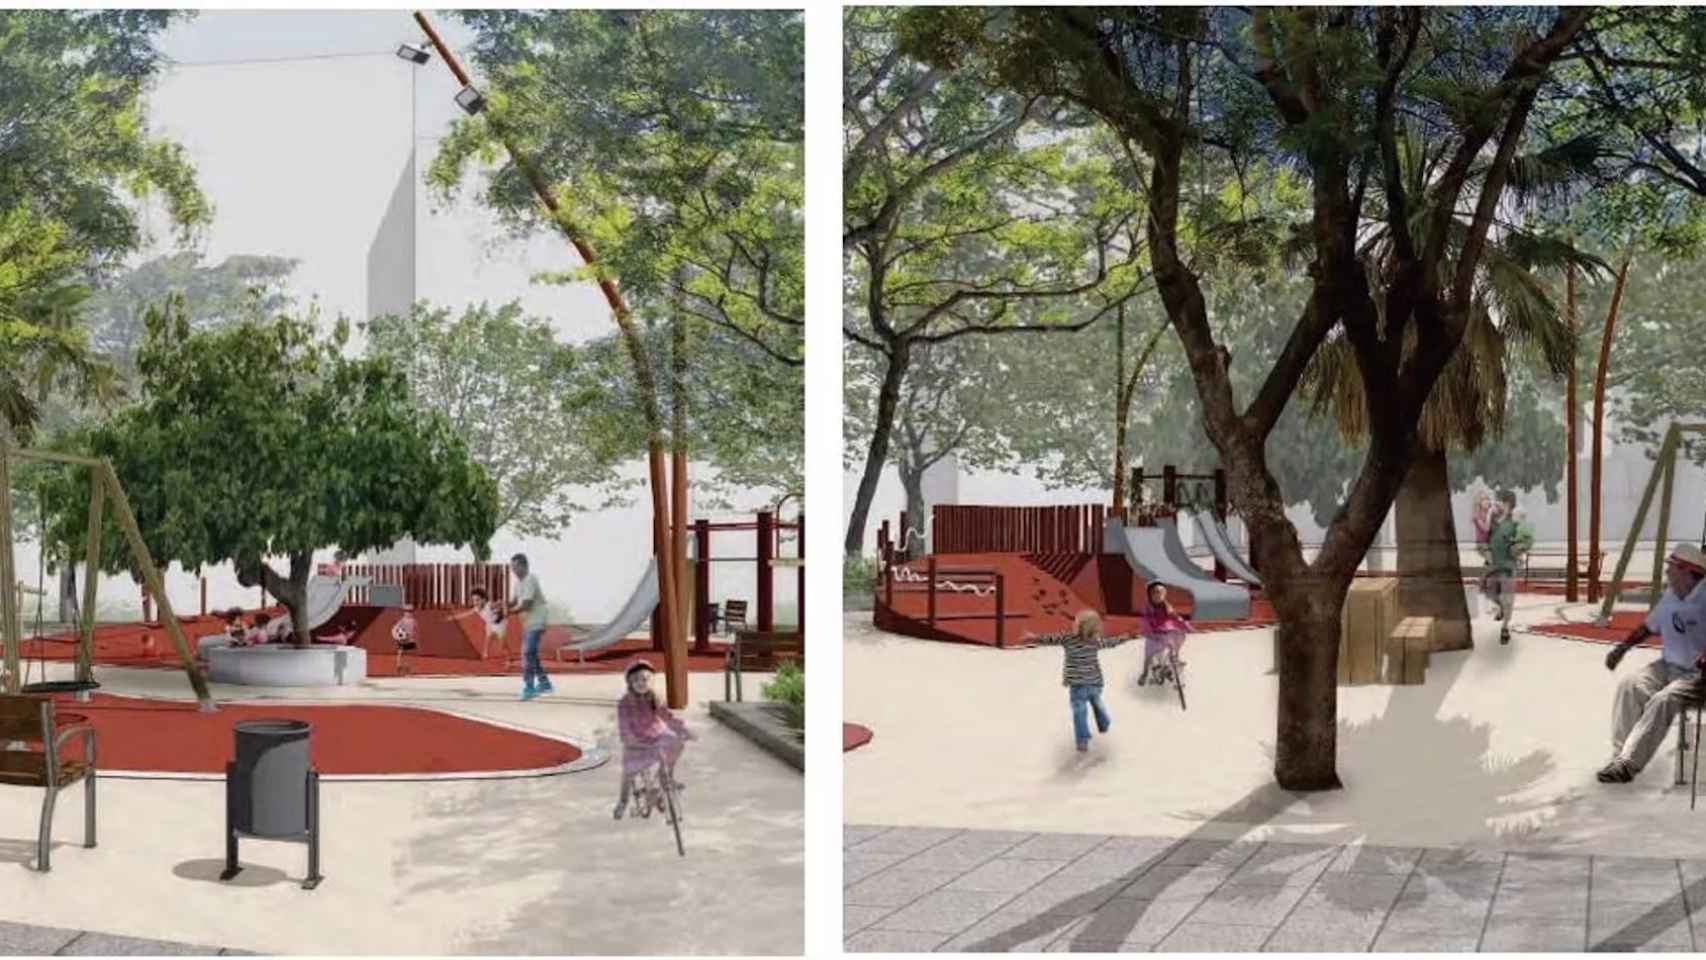 Así serán los nuevos espacios verdes para niños / Ajuntament de Barcelona